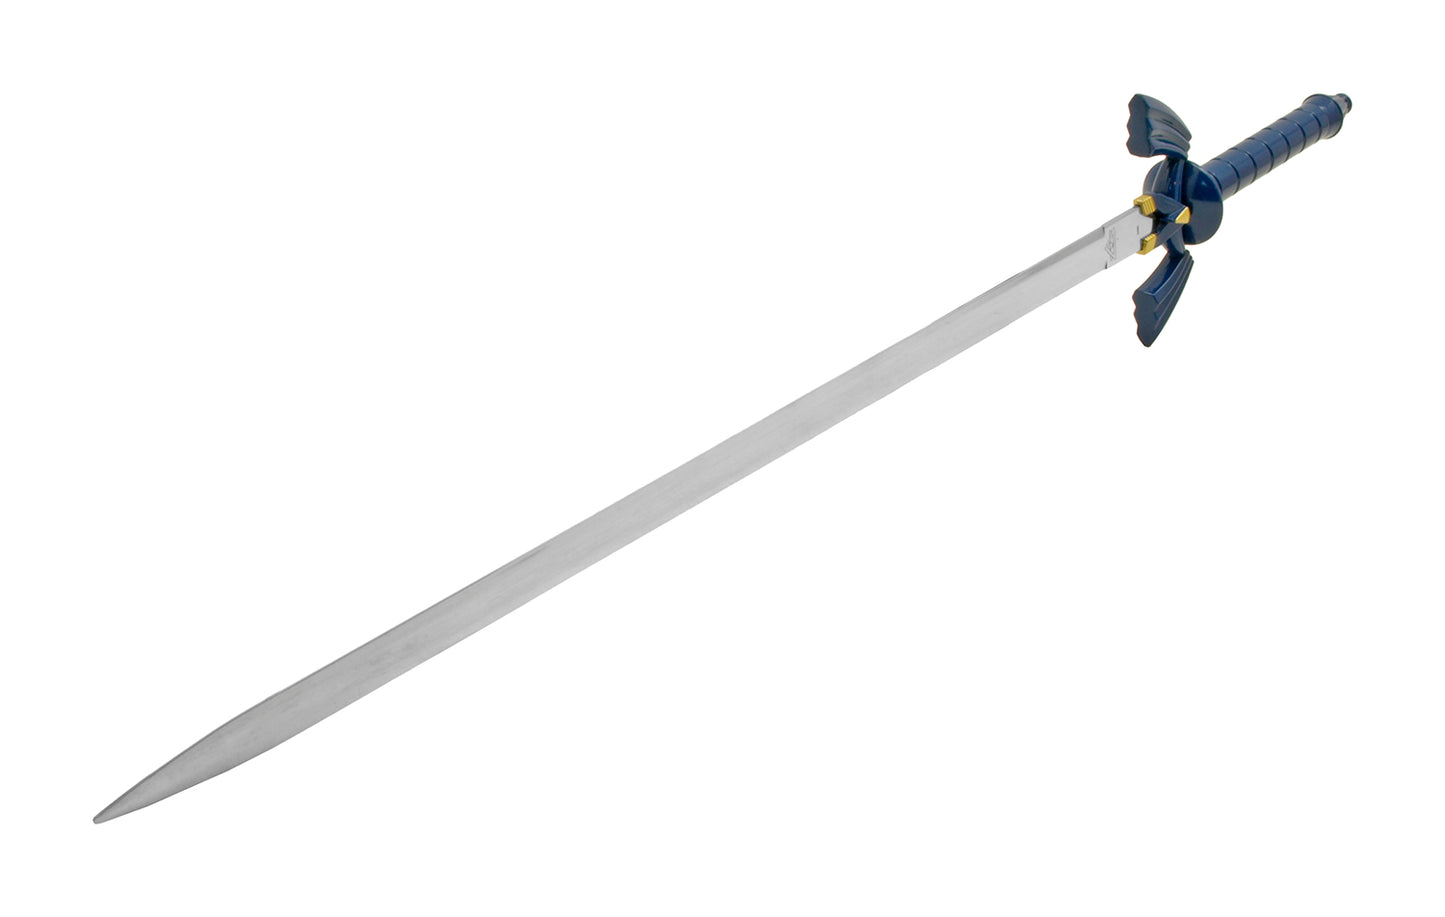 Legend of Zelda - Blue and Gold Master Sword